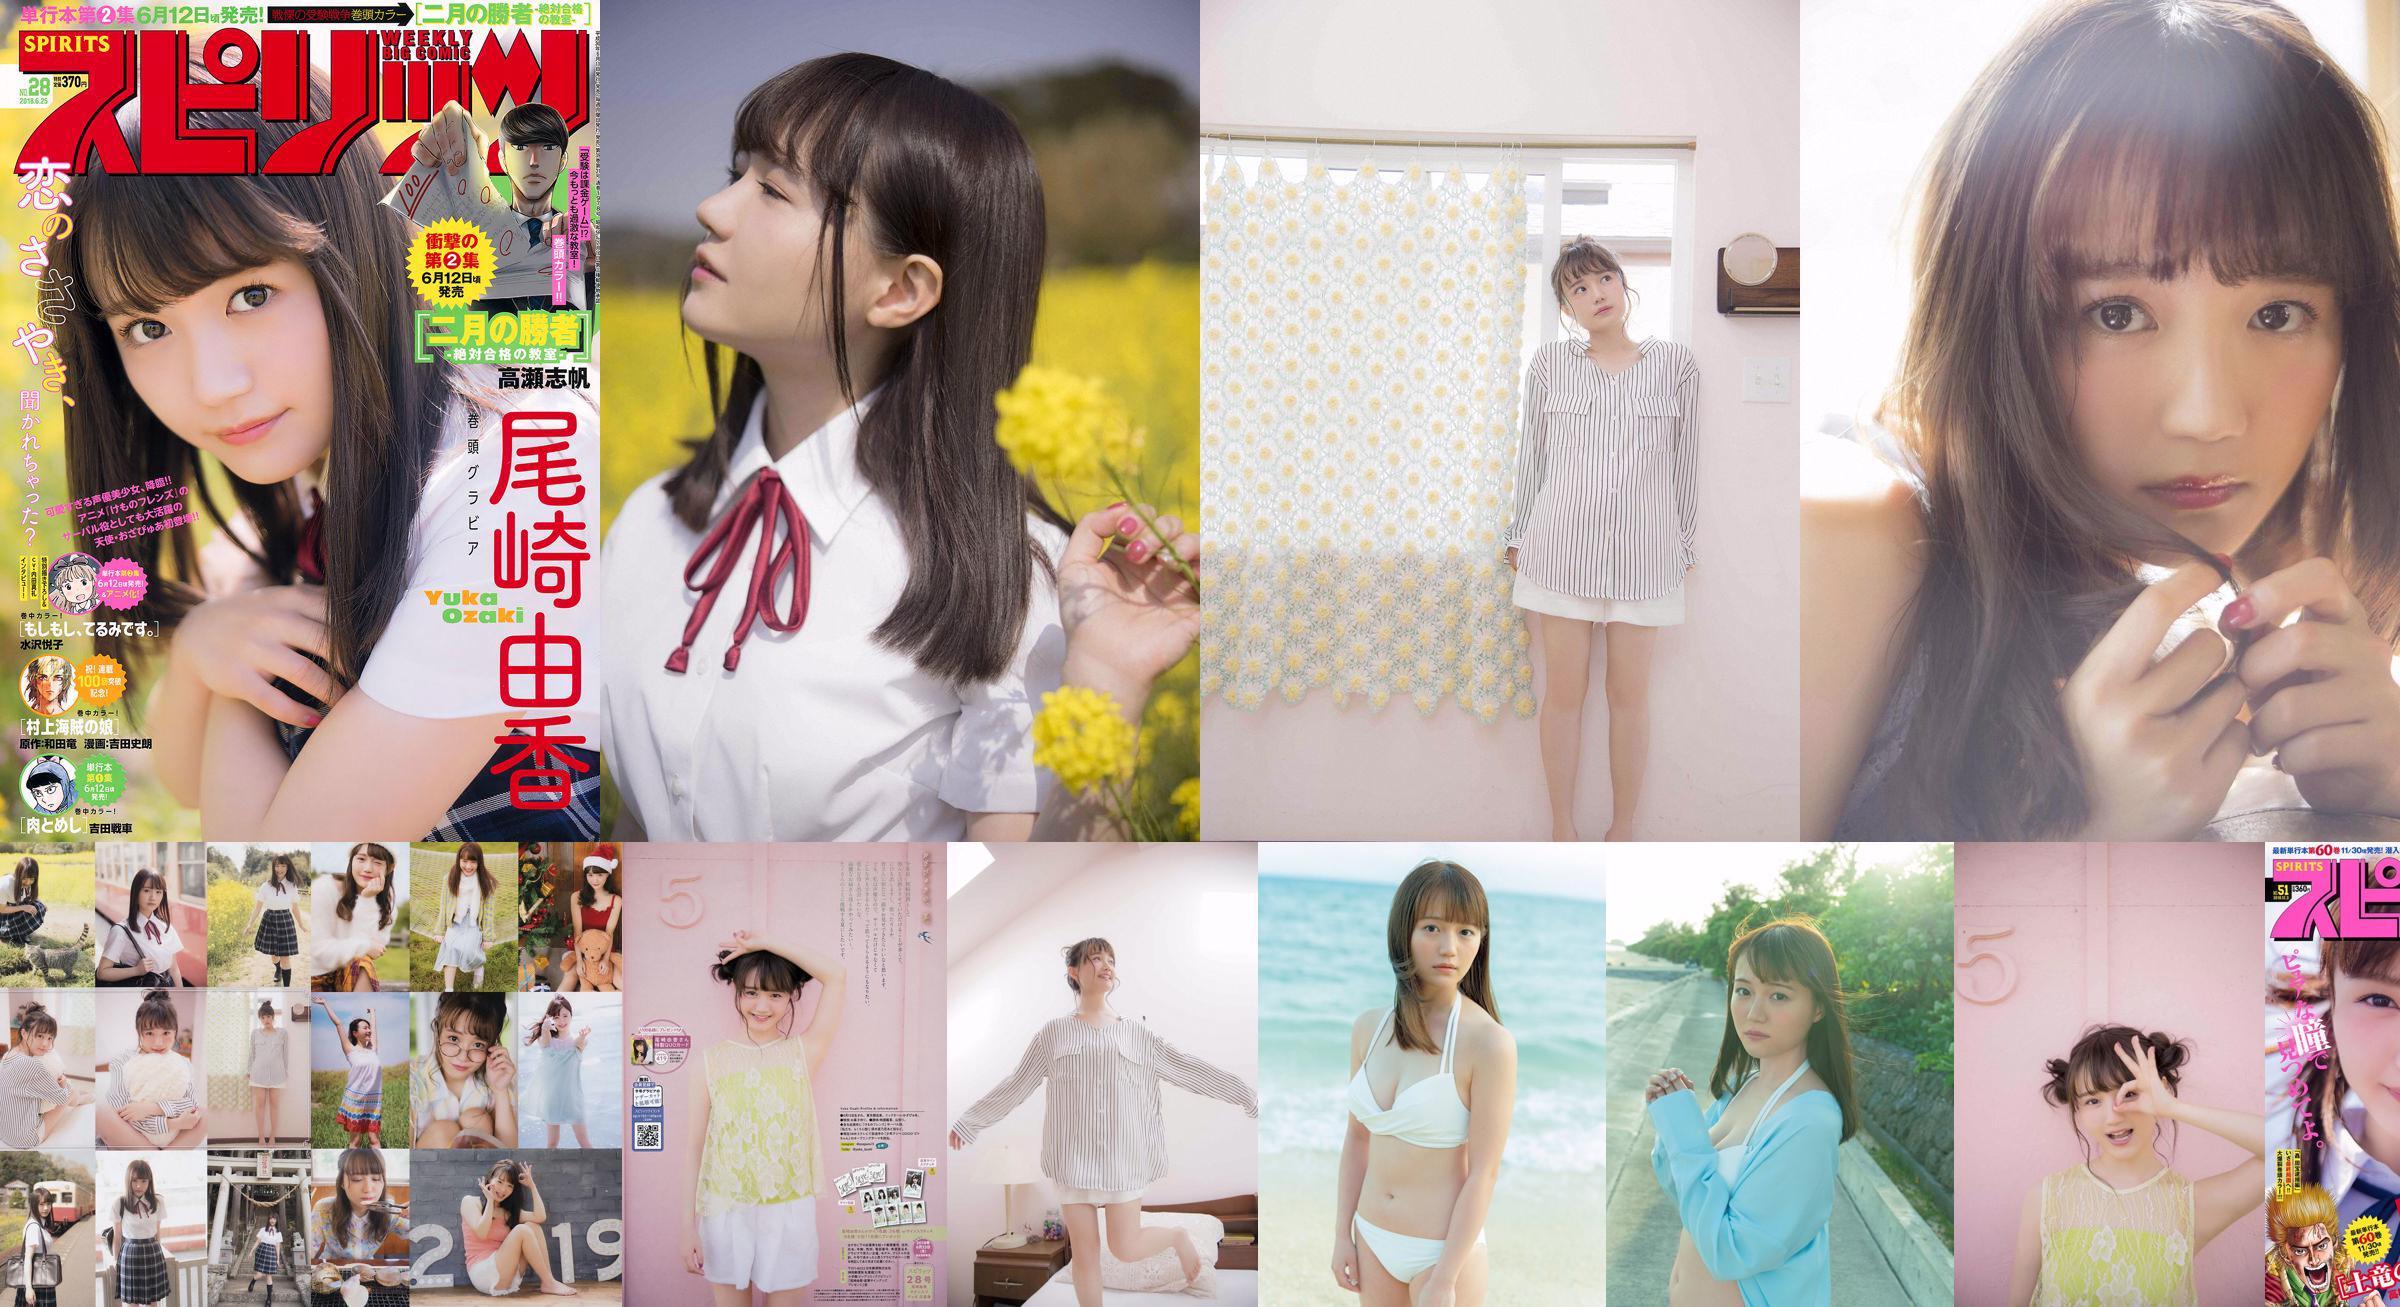 [PIĄTEK] Yuka Ozaki „Aktor głosowy głównej bohaterki anime„ Kemono Friends ”jest teraz w białym bikini” Zdjęcie No.4a1f0a Strona 1